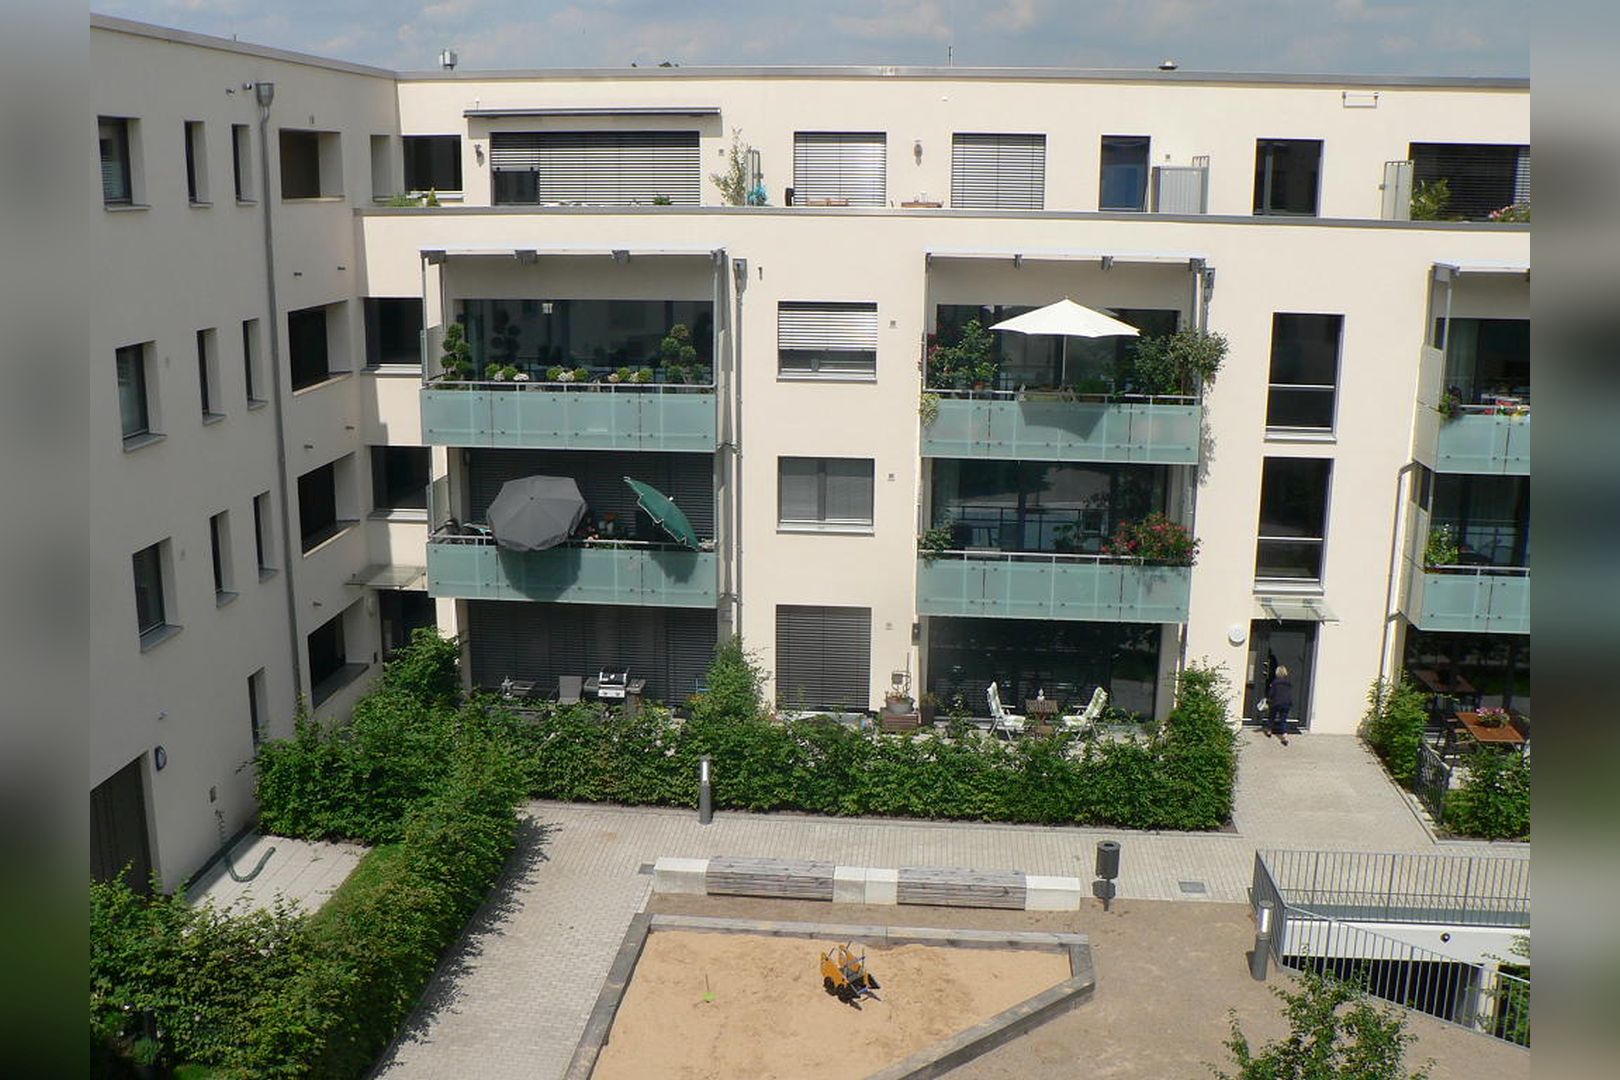 Immobilie Nr.Hilden WE 09 - 4-Zimmer-Garten-Maisonette-Wohnung mit Garten, Aufzug und TG-Stellplatz - Bild 13.jpg